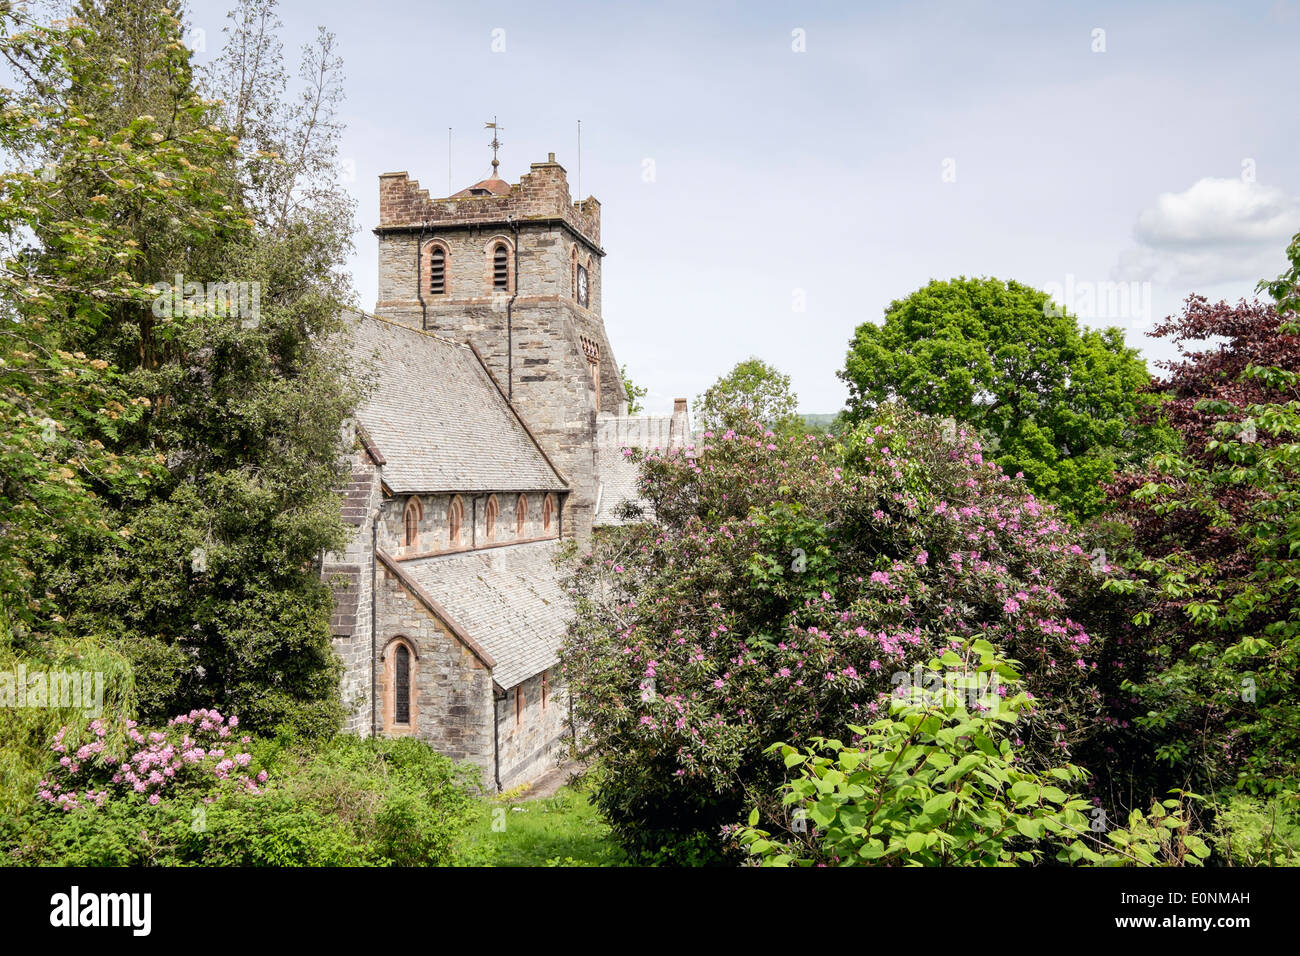 St Mary's Parish Church en 1873 Village de l'été dans le parc national de Snowdonia Betws-Y-coed au nord du Pays de Galles Royaume-uni Grande-Bretagne Banque D'Images